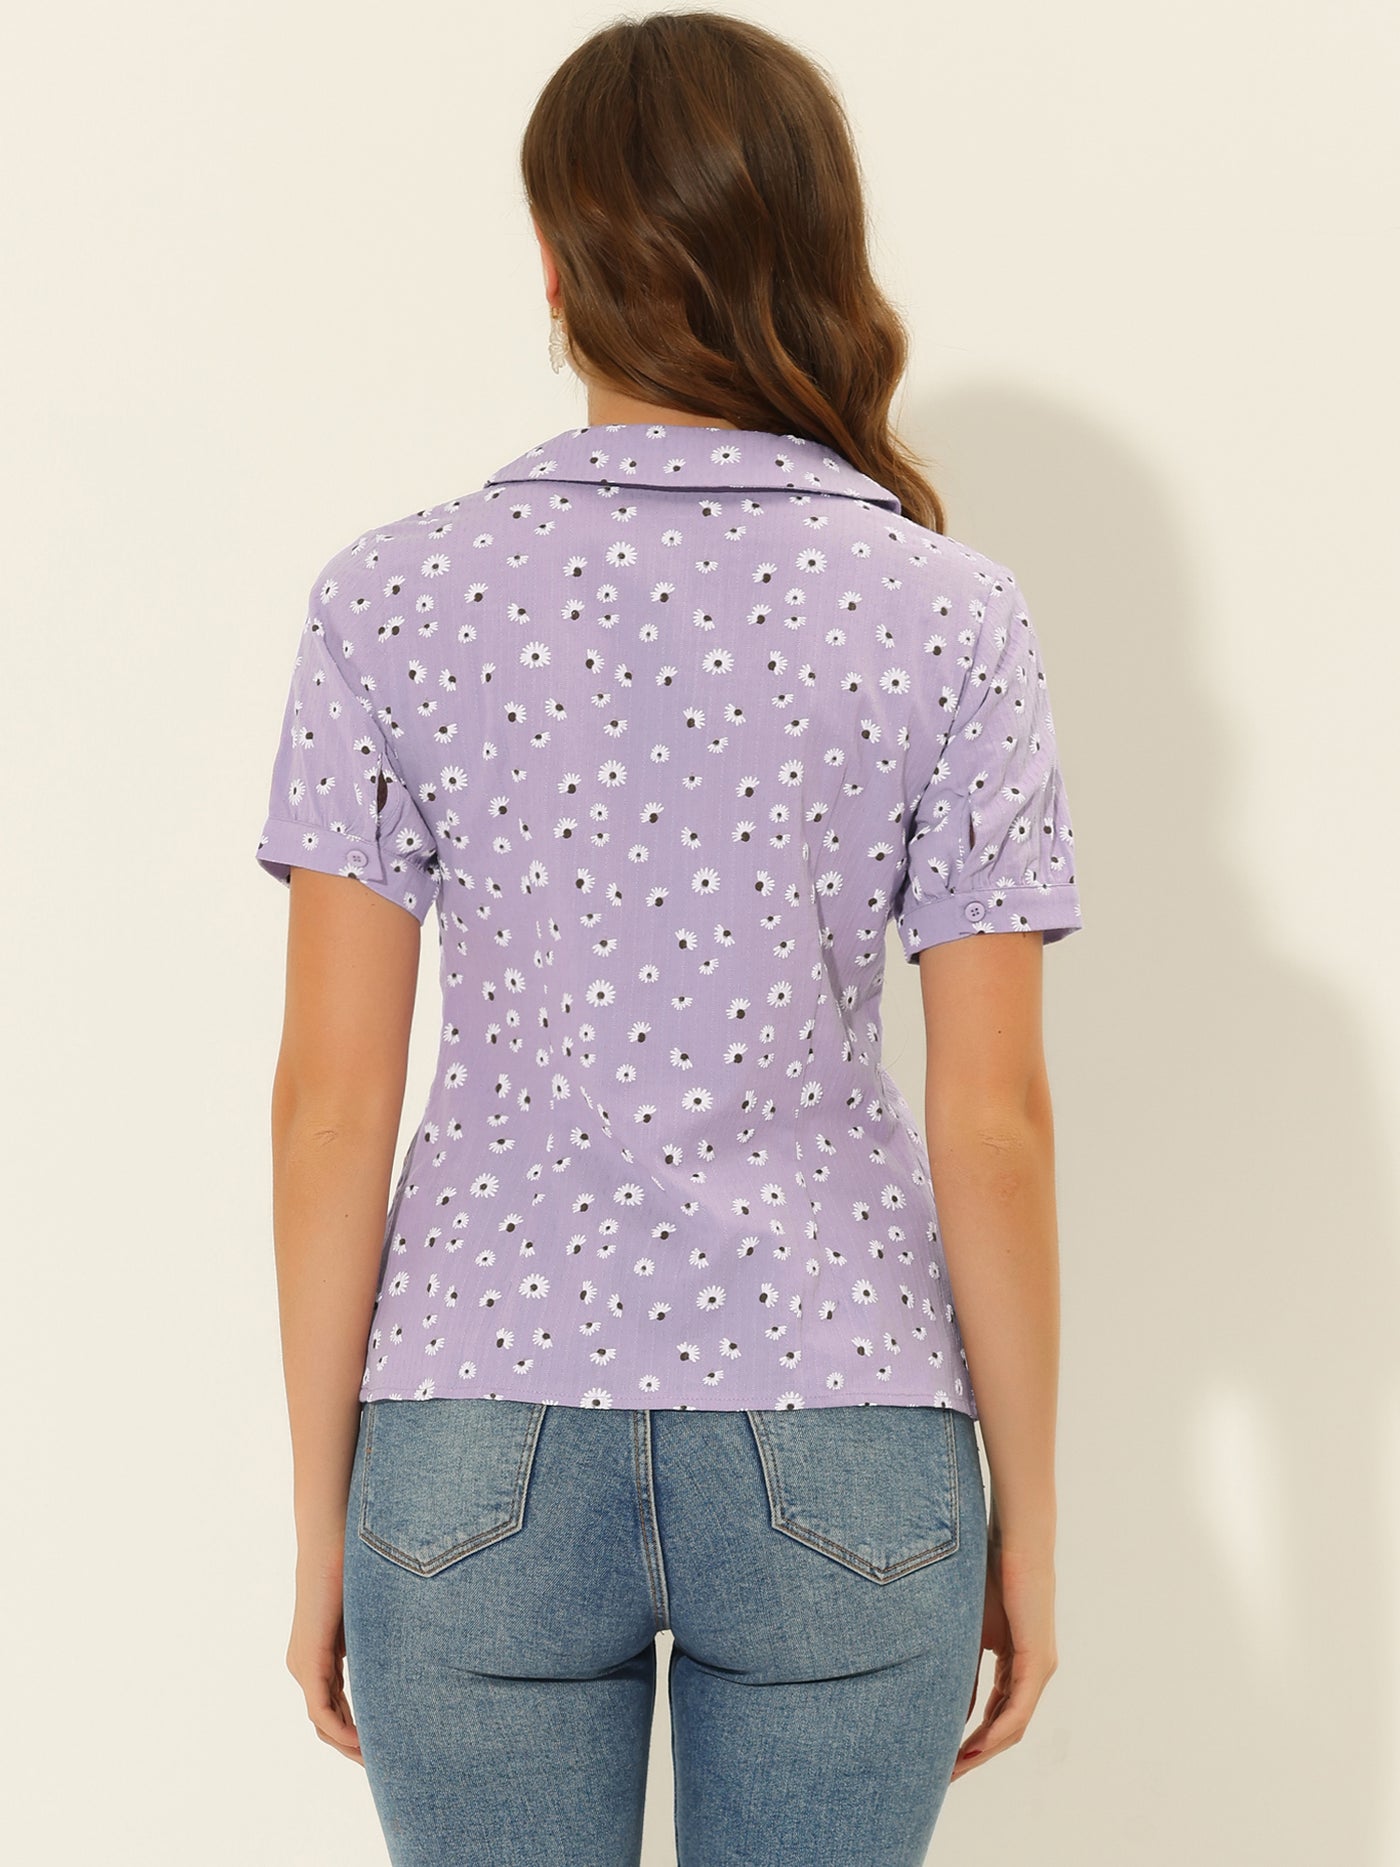 Allegra K Peter Pan Collar Summer Tops Button Front Elegant Floral Shirt